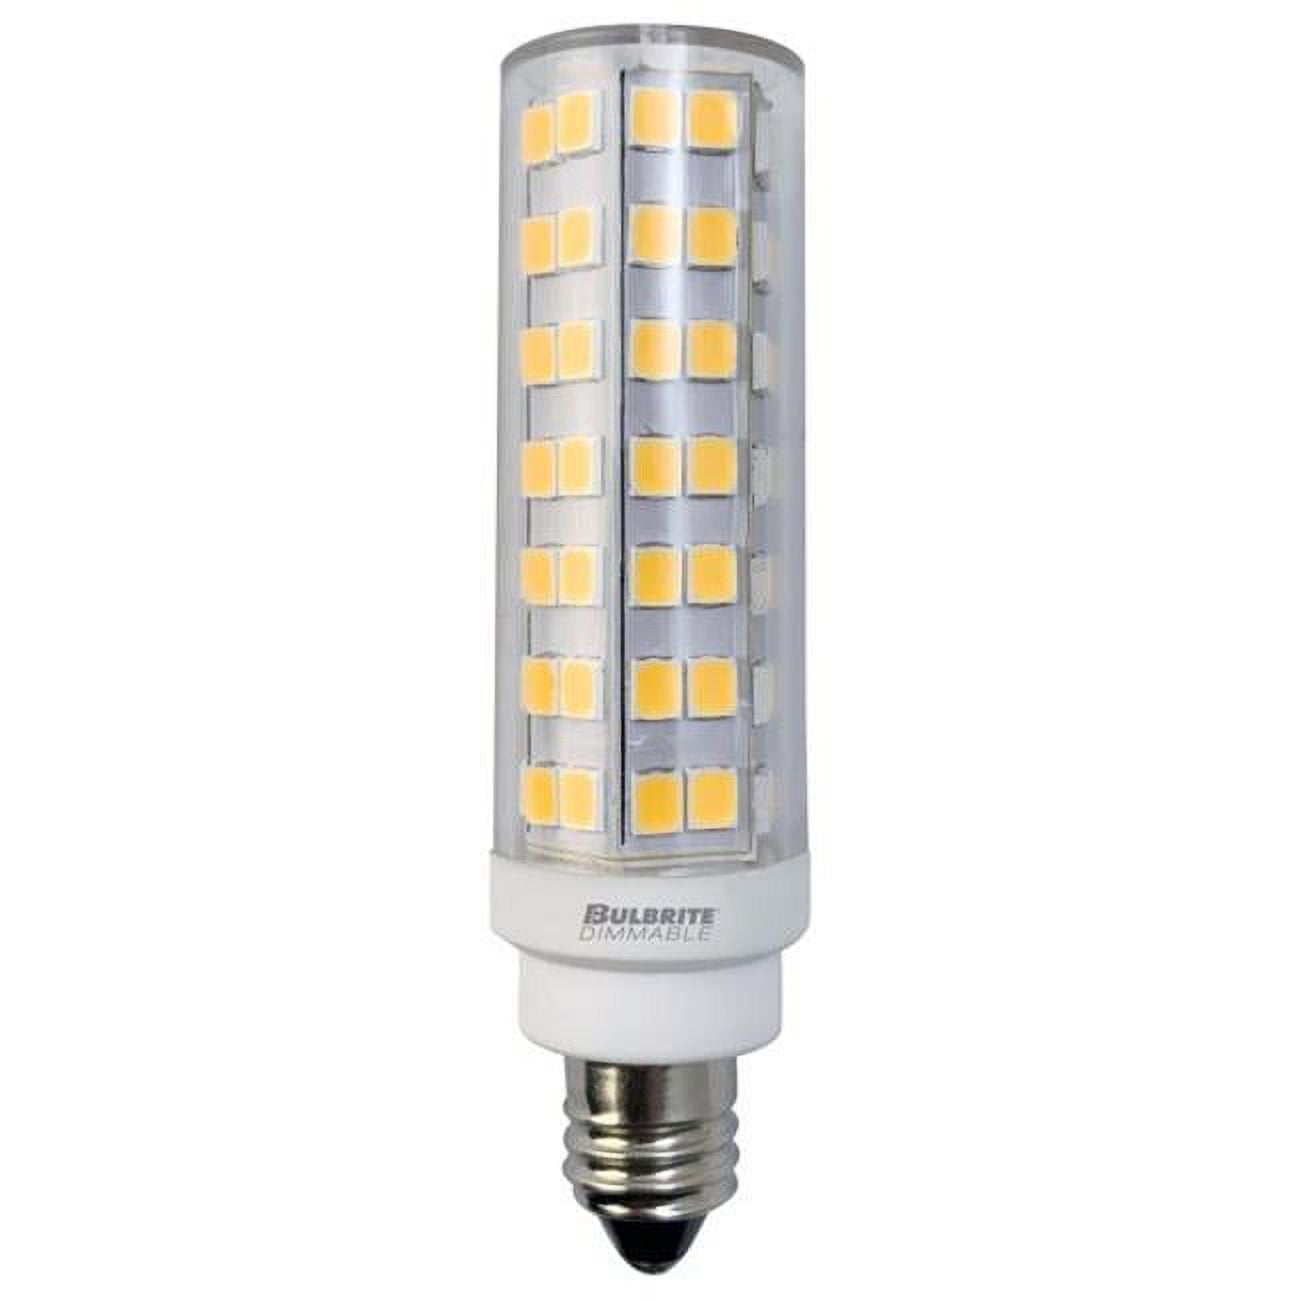 Picture of Bulbrite Pack of (2) 6.5 Watt 120V Dimmable Clear T6 LED Mini Light Bulbs with Mini-Candelabra (E11) Base  3000K Soft White Light  700 Lumens